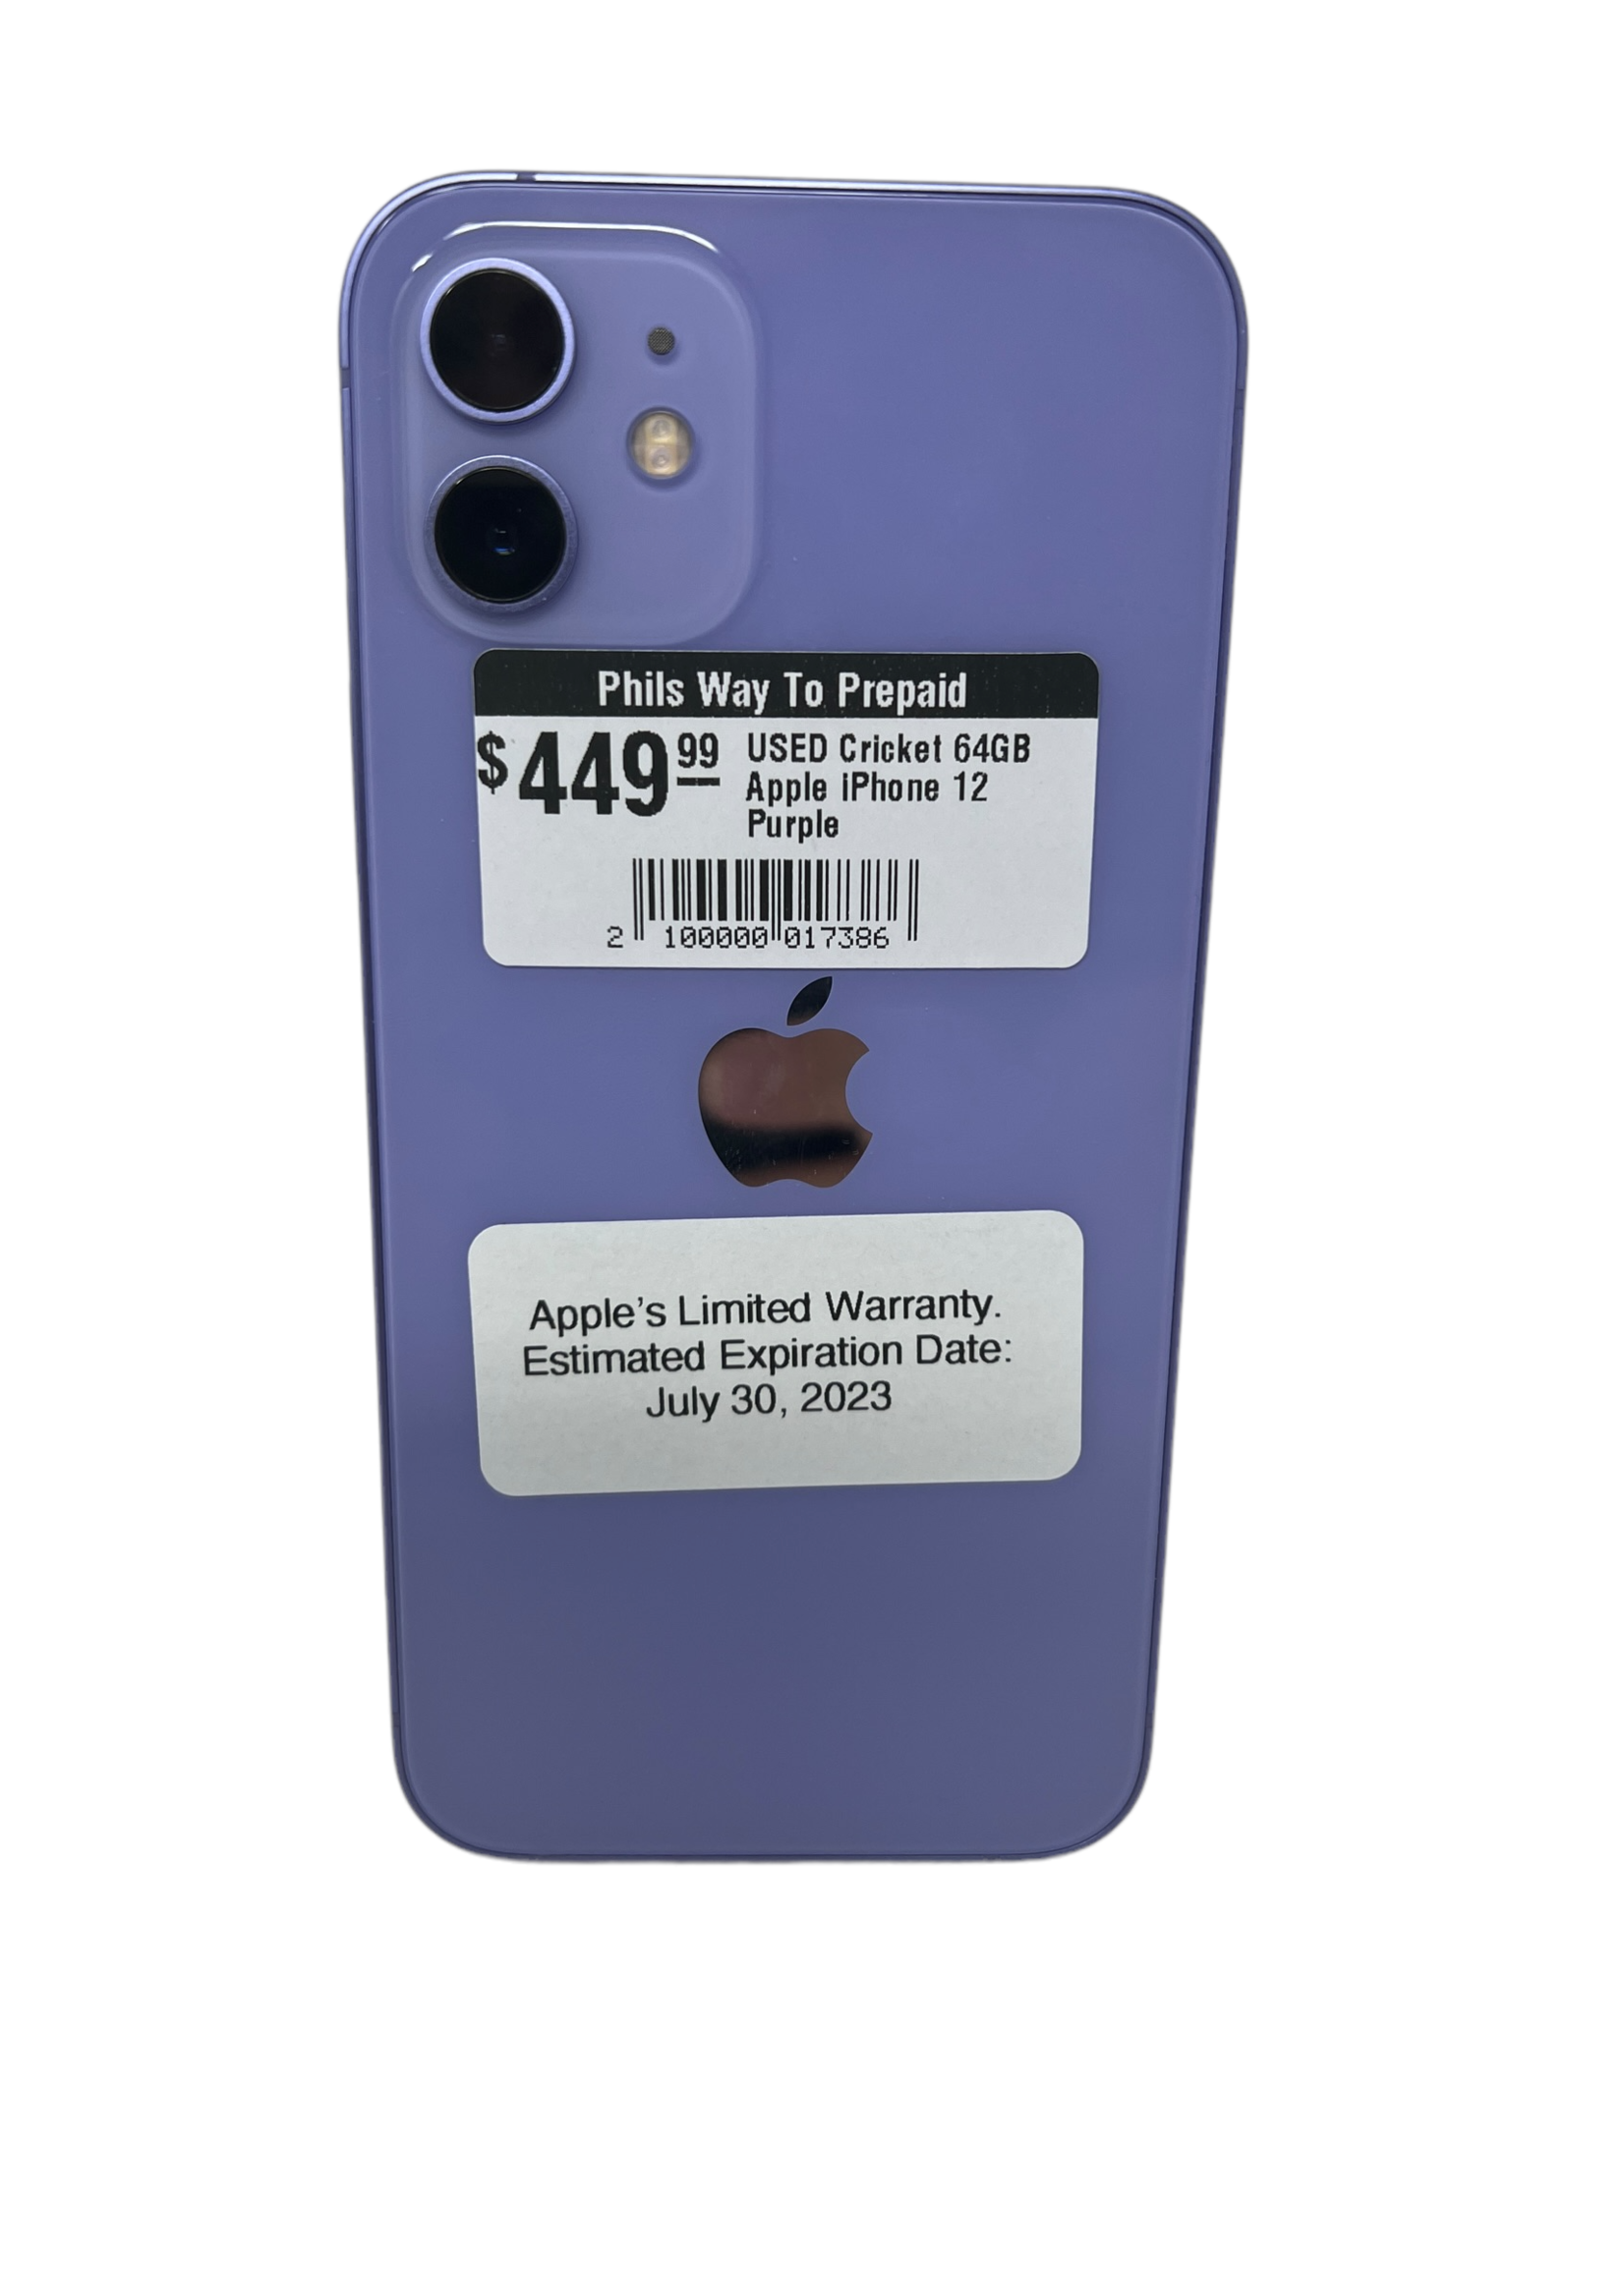 Apple USED Cricket 64GB Apple iPhone 12 Purple